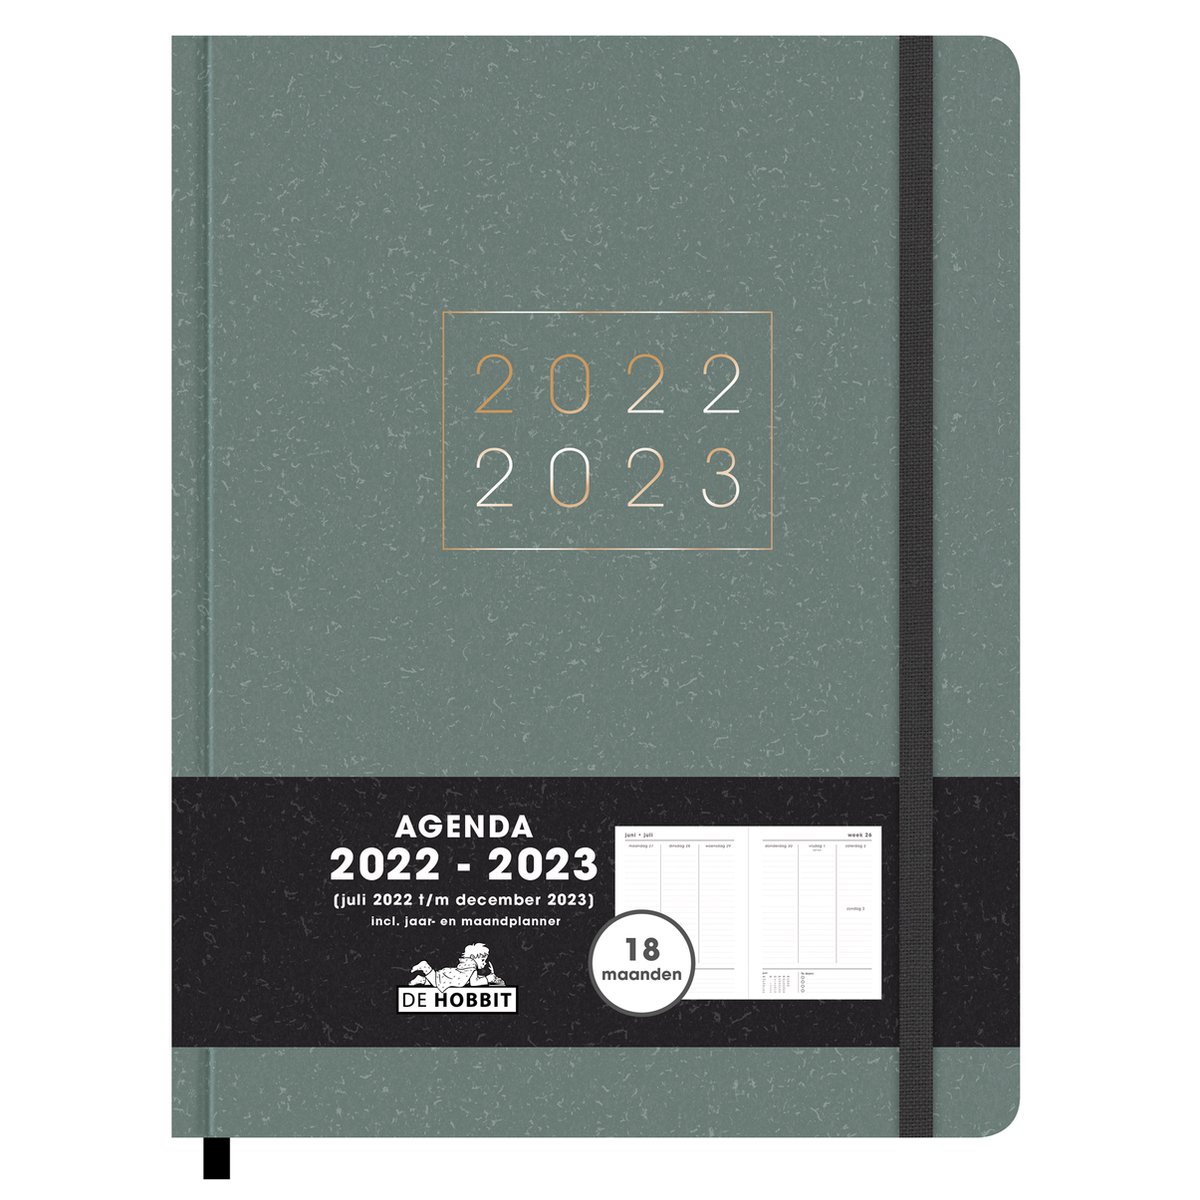 Hobbit - Agenda 18 Maanden - 2022/2023 - Grijsgroen - Week per 2 pagina's - Hardcover - 26,5x20,5cm